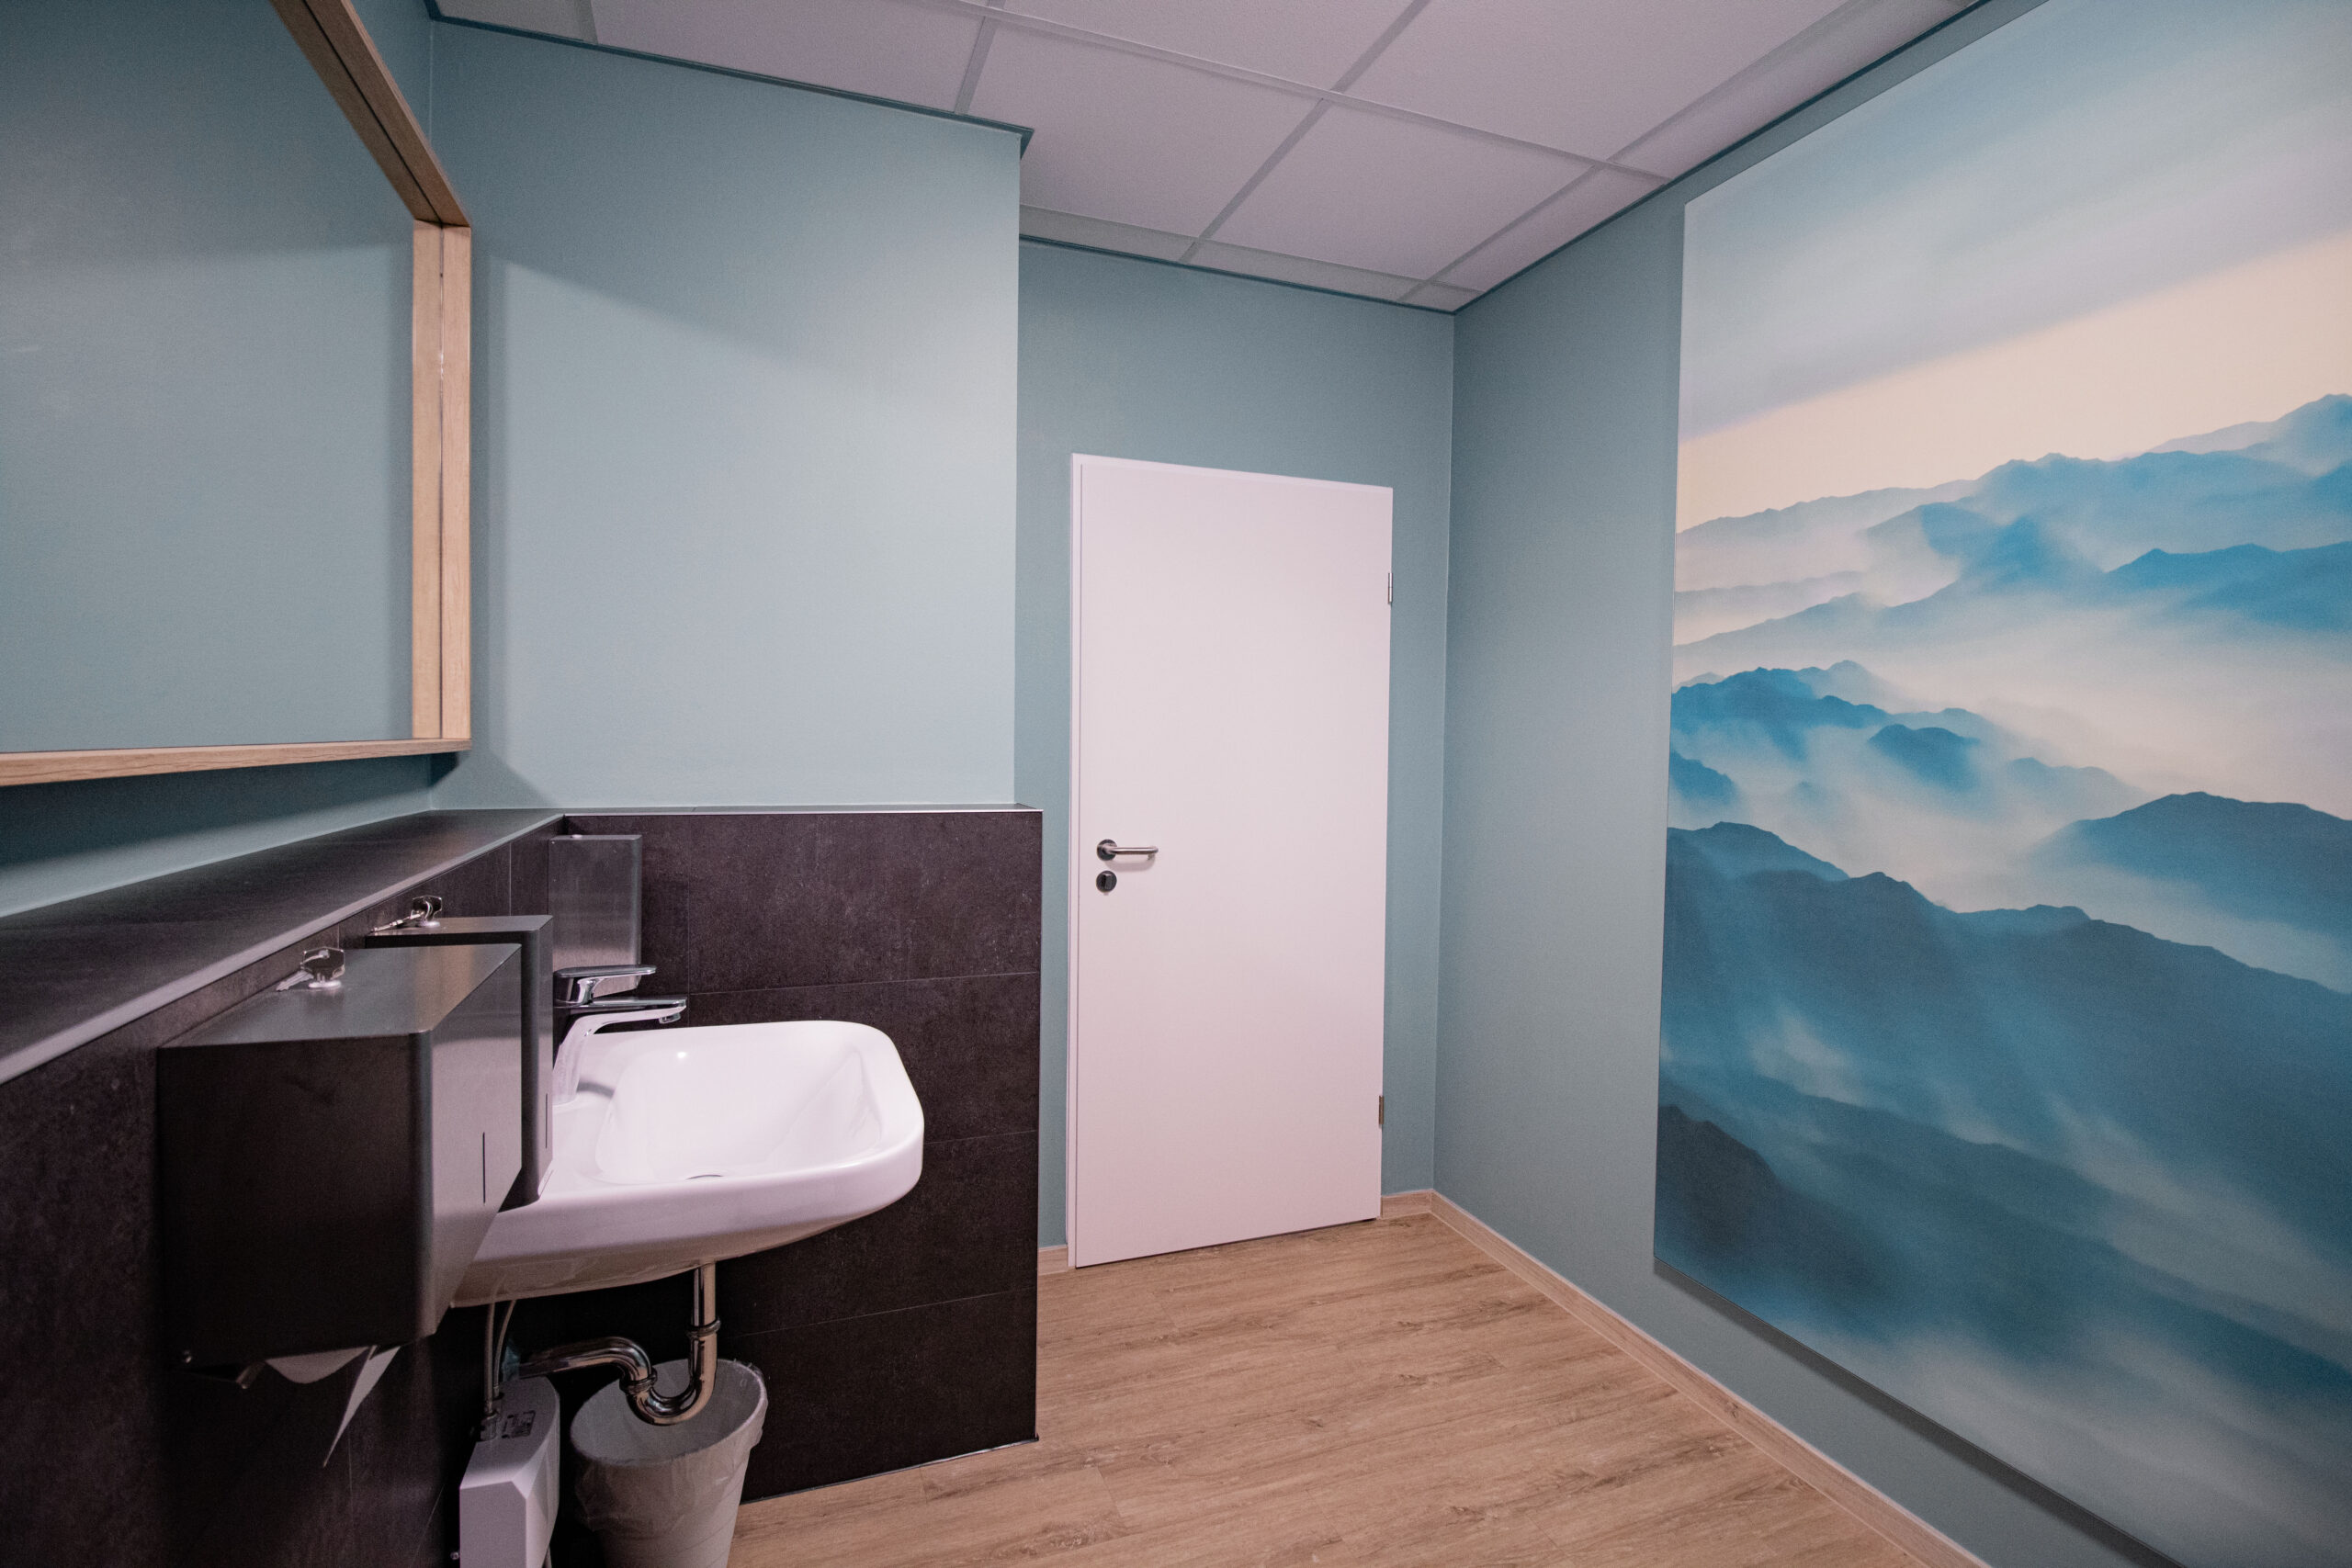 Patienten WC mit Fußboden in Holzoptik. Cyan-Blau gestrichene Wände. Auf der linken Bildseite ein weißes Waschbecken, hängt an einer Vorsatzschale mit grauen Fliesen. Darüber ein Spiegel mit Holzrahmen. Gegenüberliegend hängt ein Akustikbild mit nebligem Bergmotiv an der Wand.